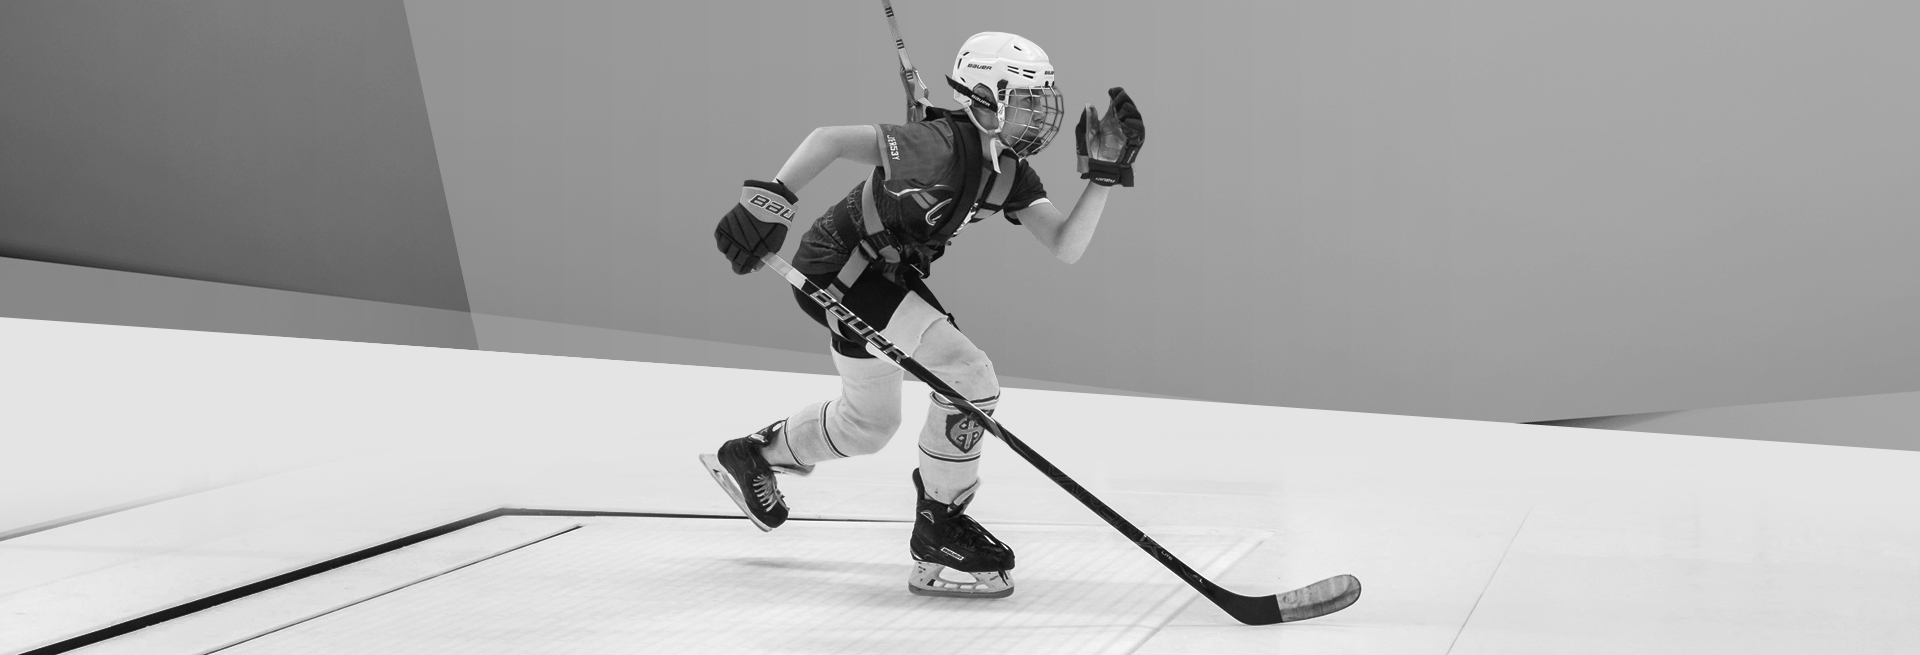 hockey skating treadmill HST